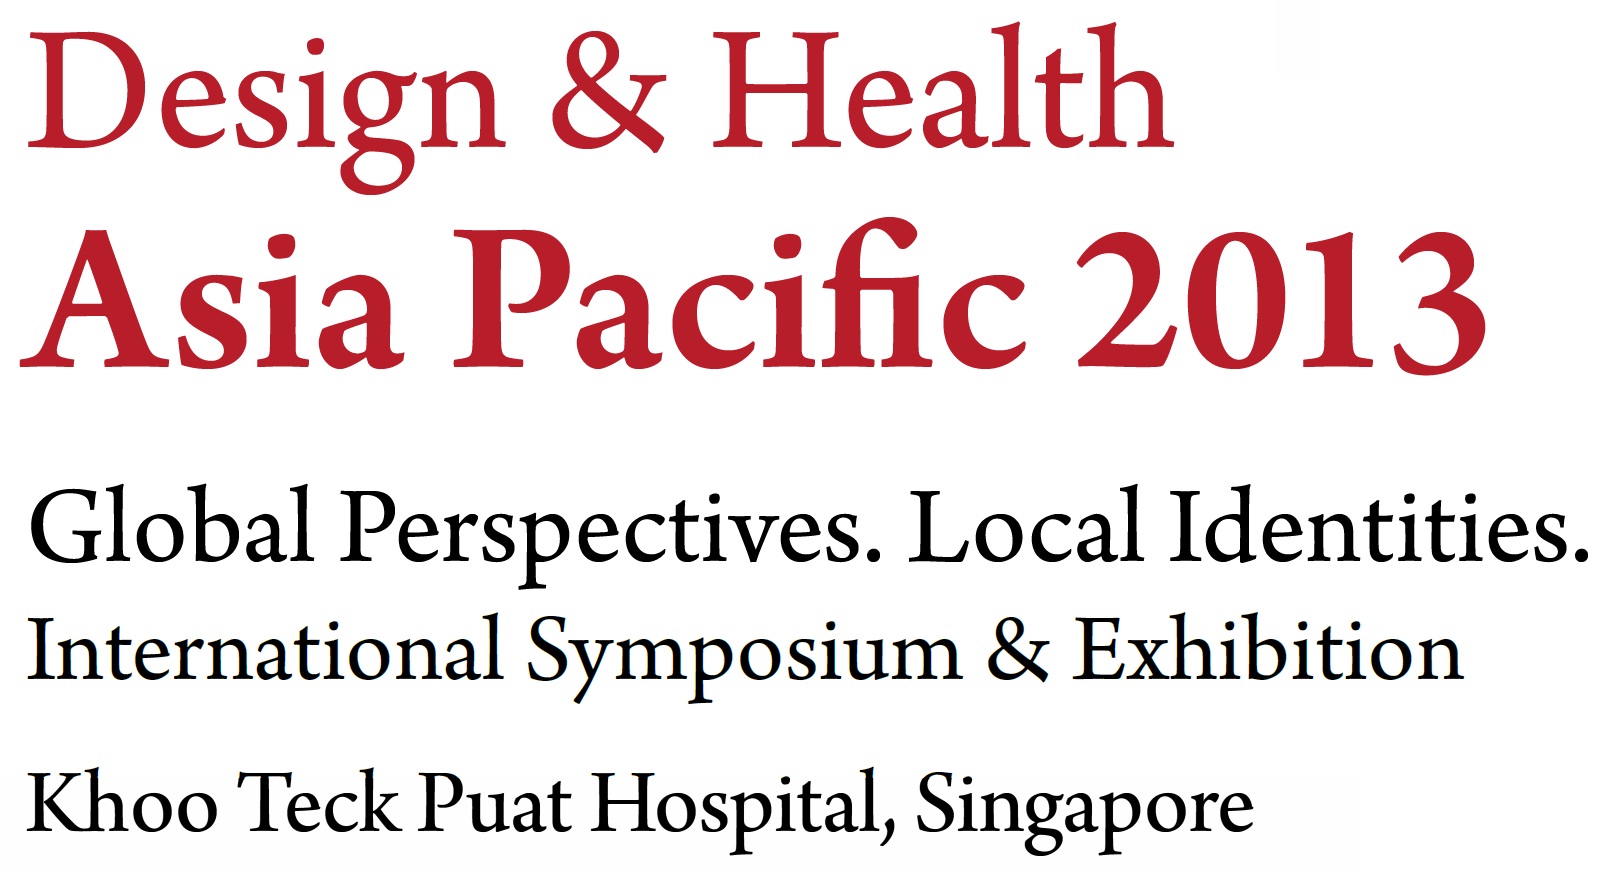 Design & Health Asia Pacific 2013